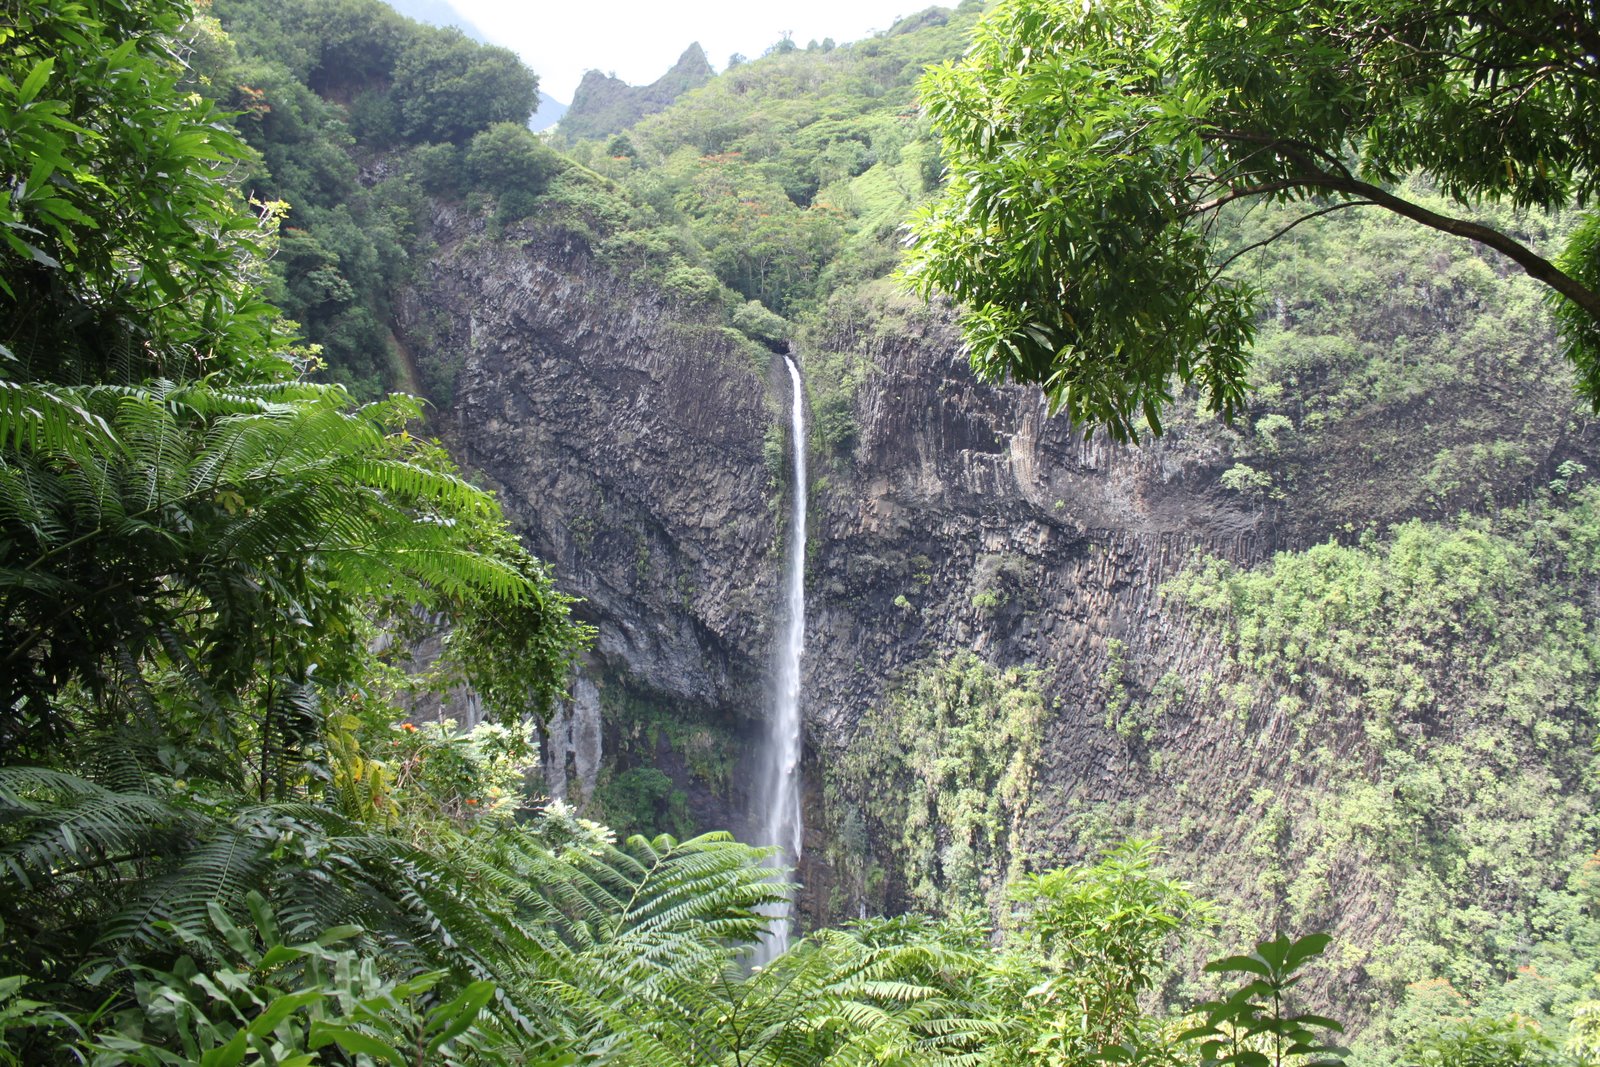 Deux randonnées sont possibles dans la vallée de la Fautaua. L'une mène au sommet de la cascade, l'autre à son pied. Les deux sont fermées pour le moment.